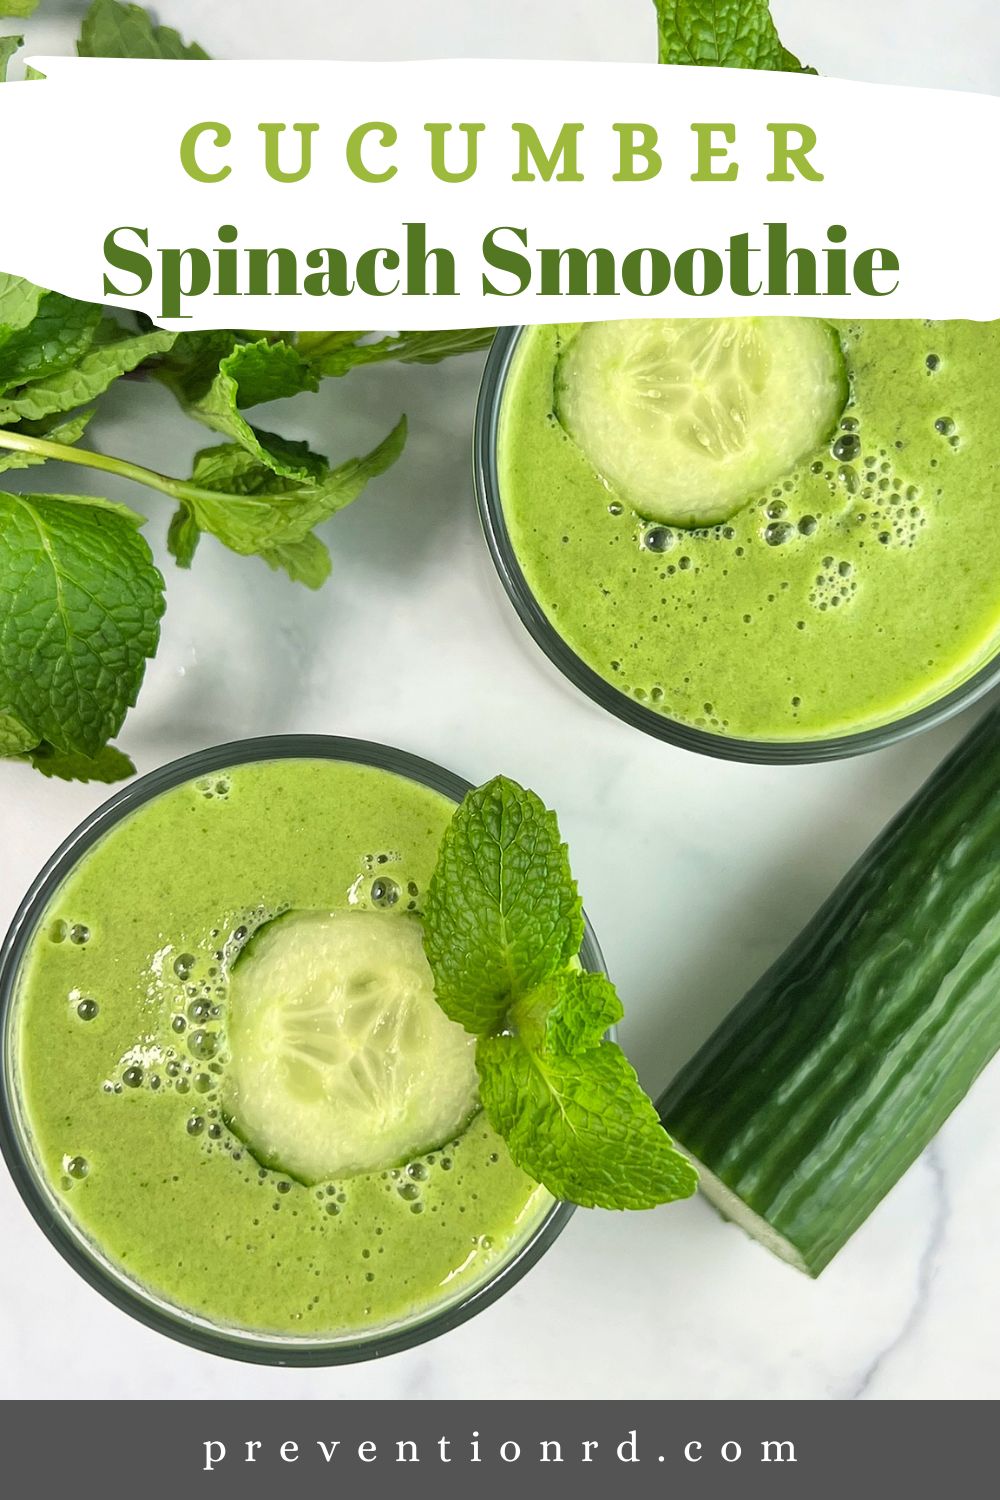 Cucumber Spinach Smoothie via @preventionrd